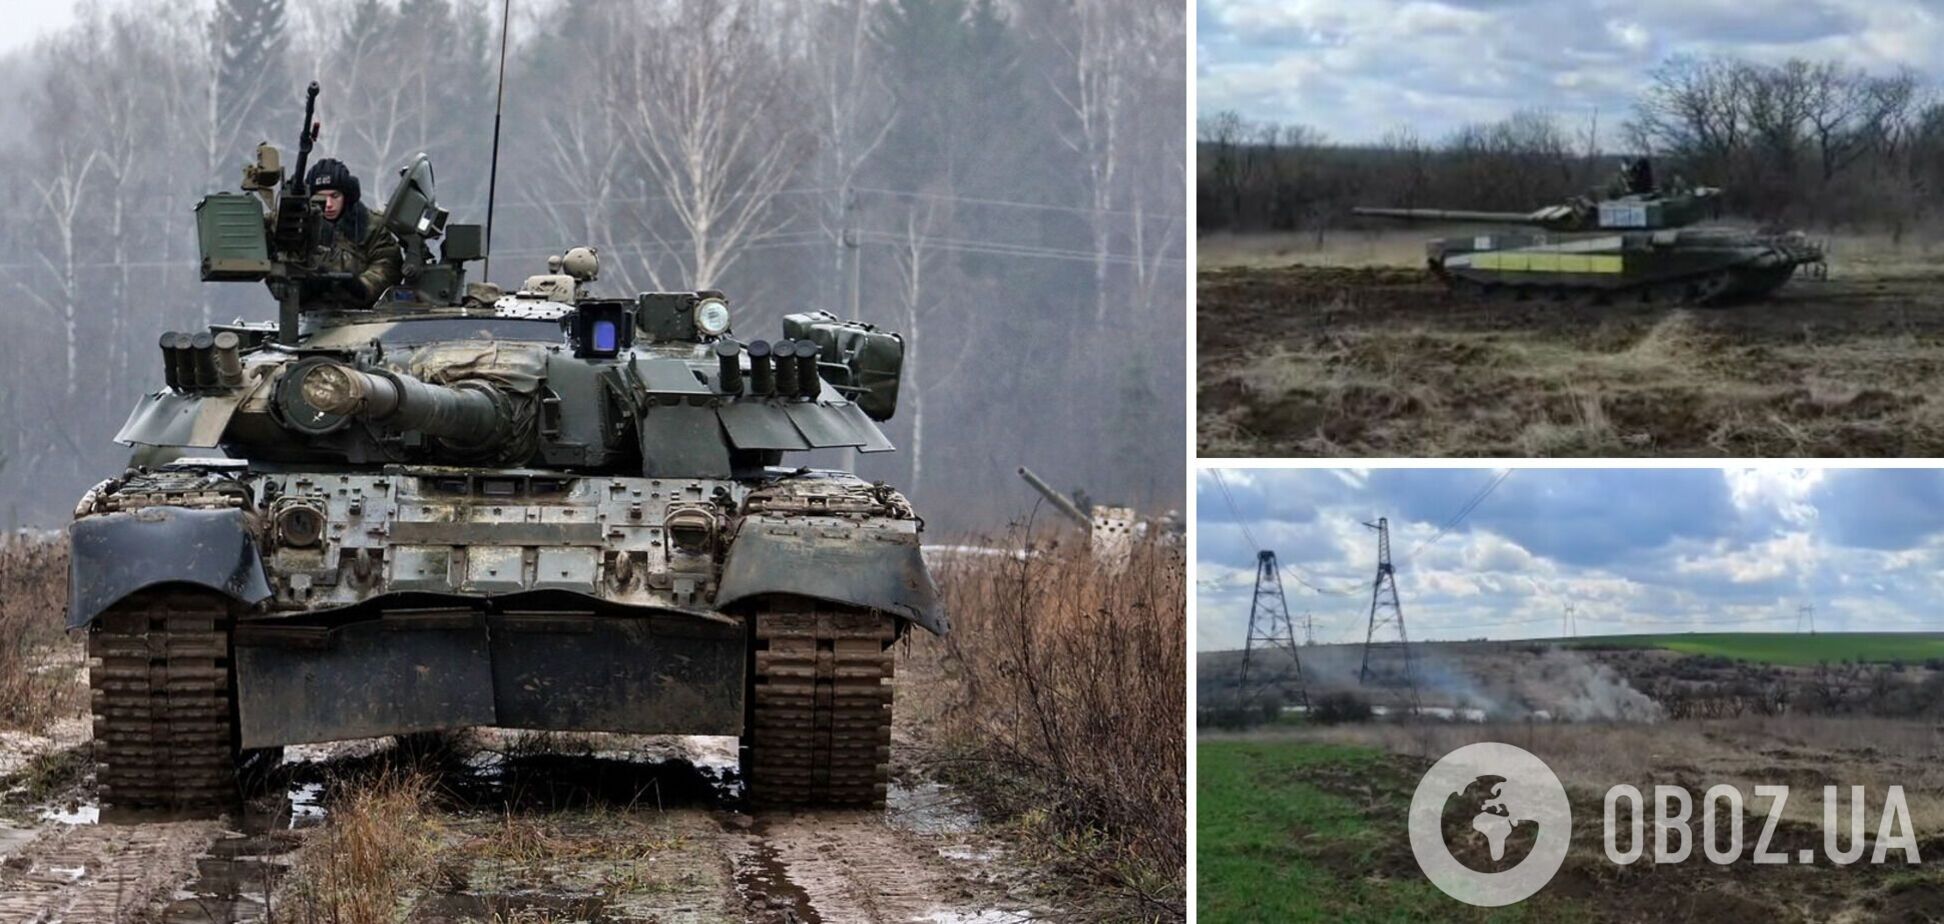 Украинские защитники захватили танк оккупантов: теперь его используют в войне против врага. Видео